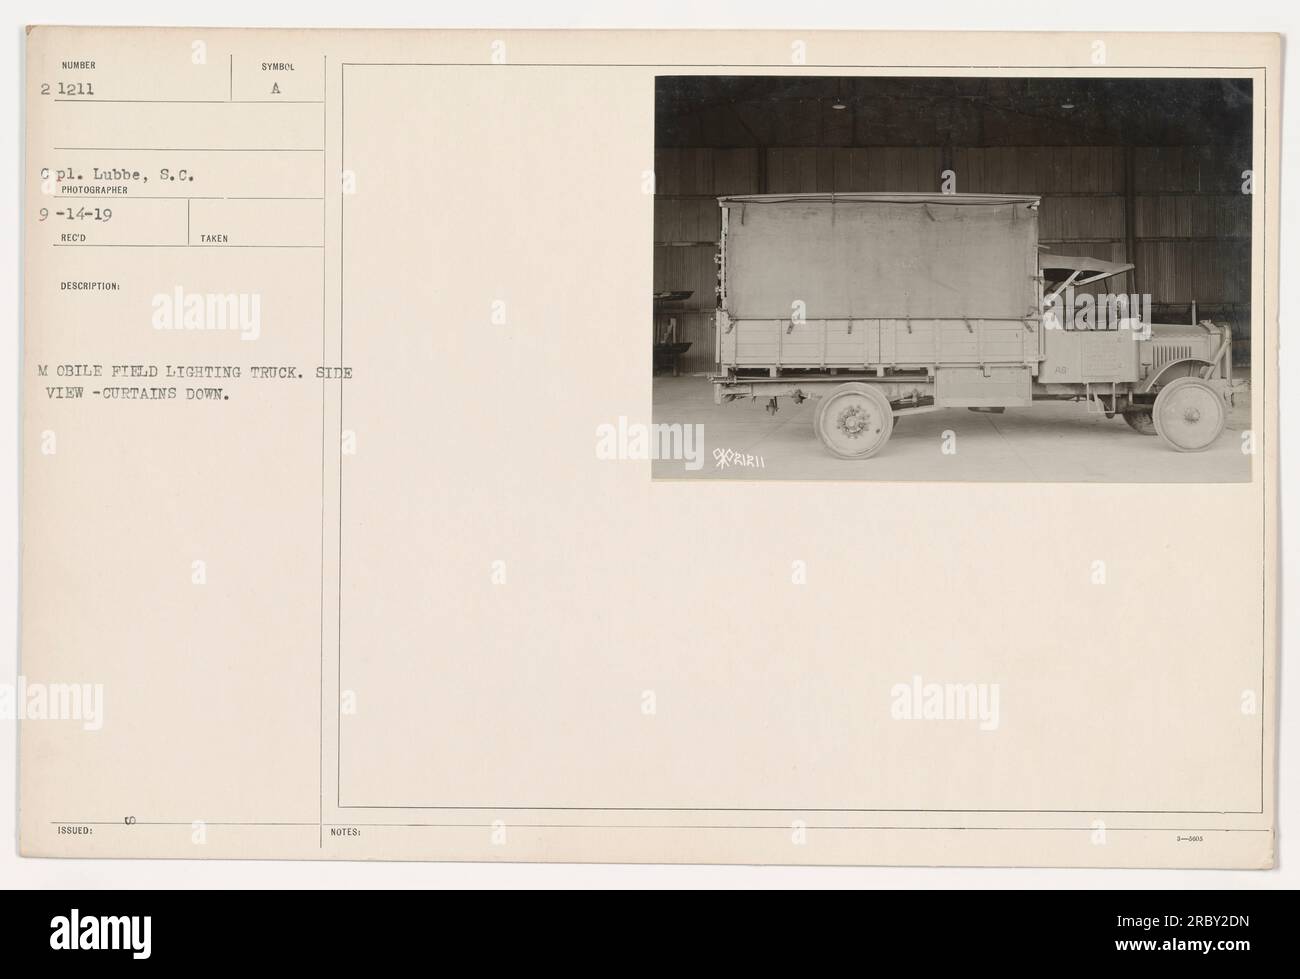 Image d'un camion d'éclairage mobile militaire américain pendant la première Guerre mondiale. La photographie montre une vue latérale du camion, avec ses rideaux abaissés. Prise par le photographe Lubbe le 14 septembre 1919. Il s'agit de l'image numéro 2,1211 de la collection. Banque D'Images